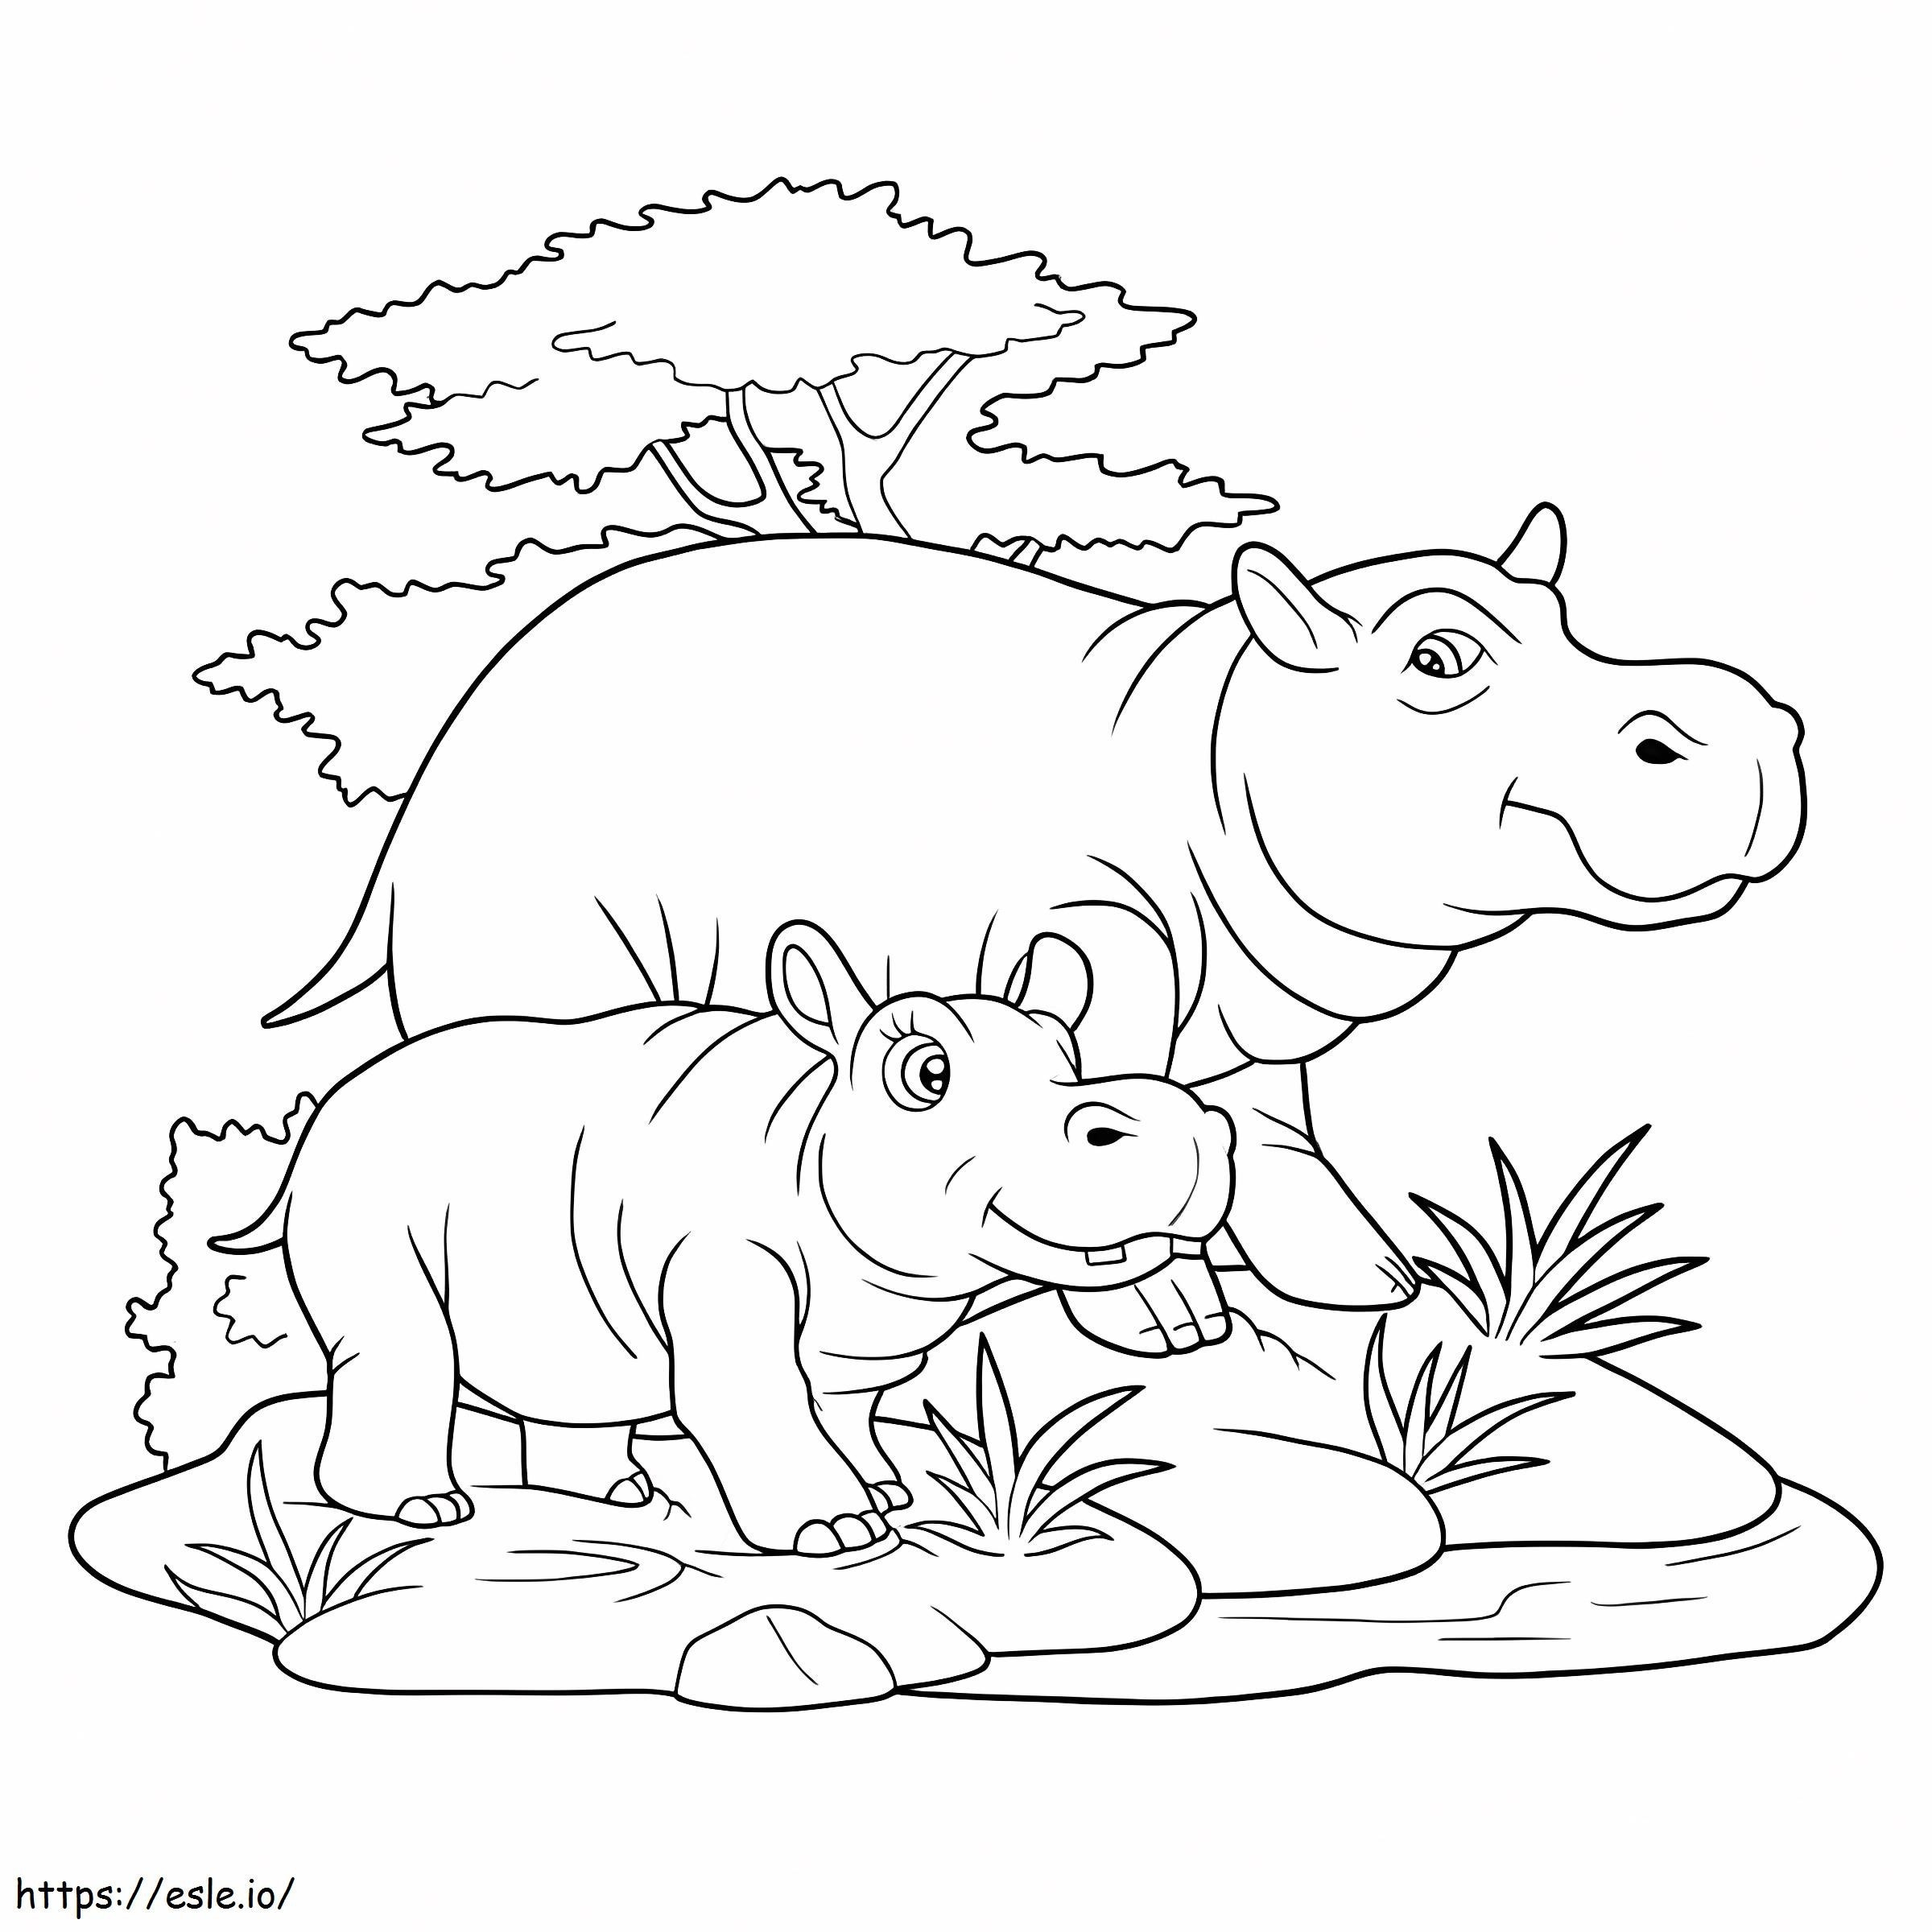 Coloriage Hippopotame de base, mère et bébé hippopotame à imprimer dessin